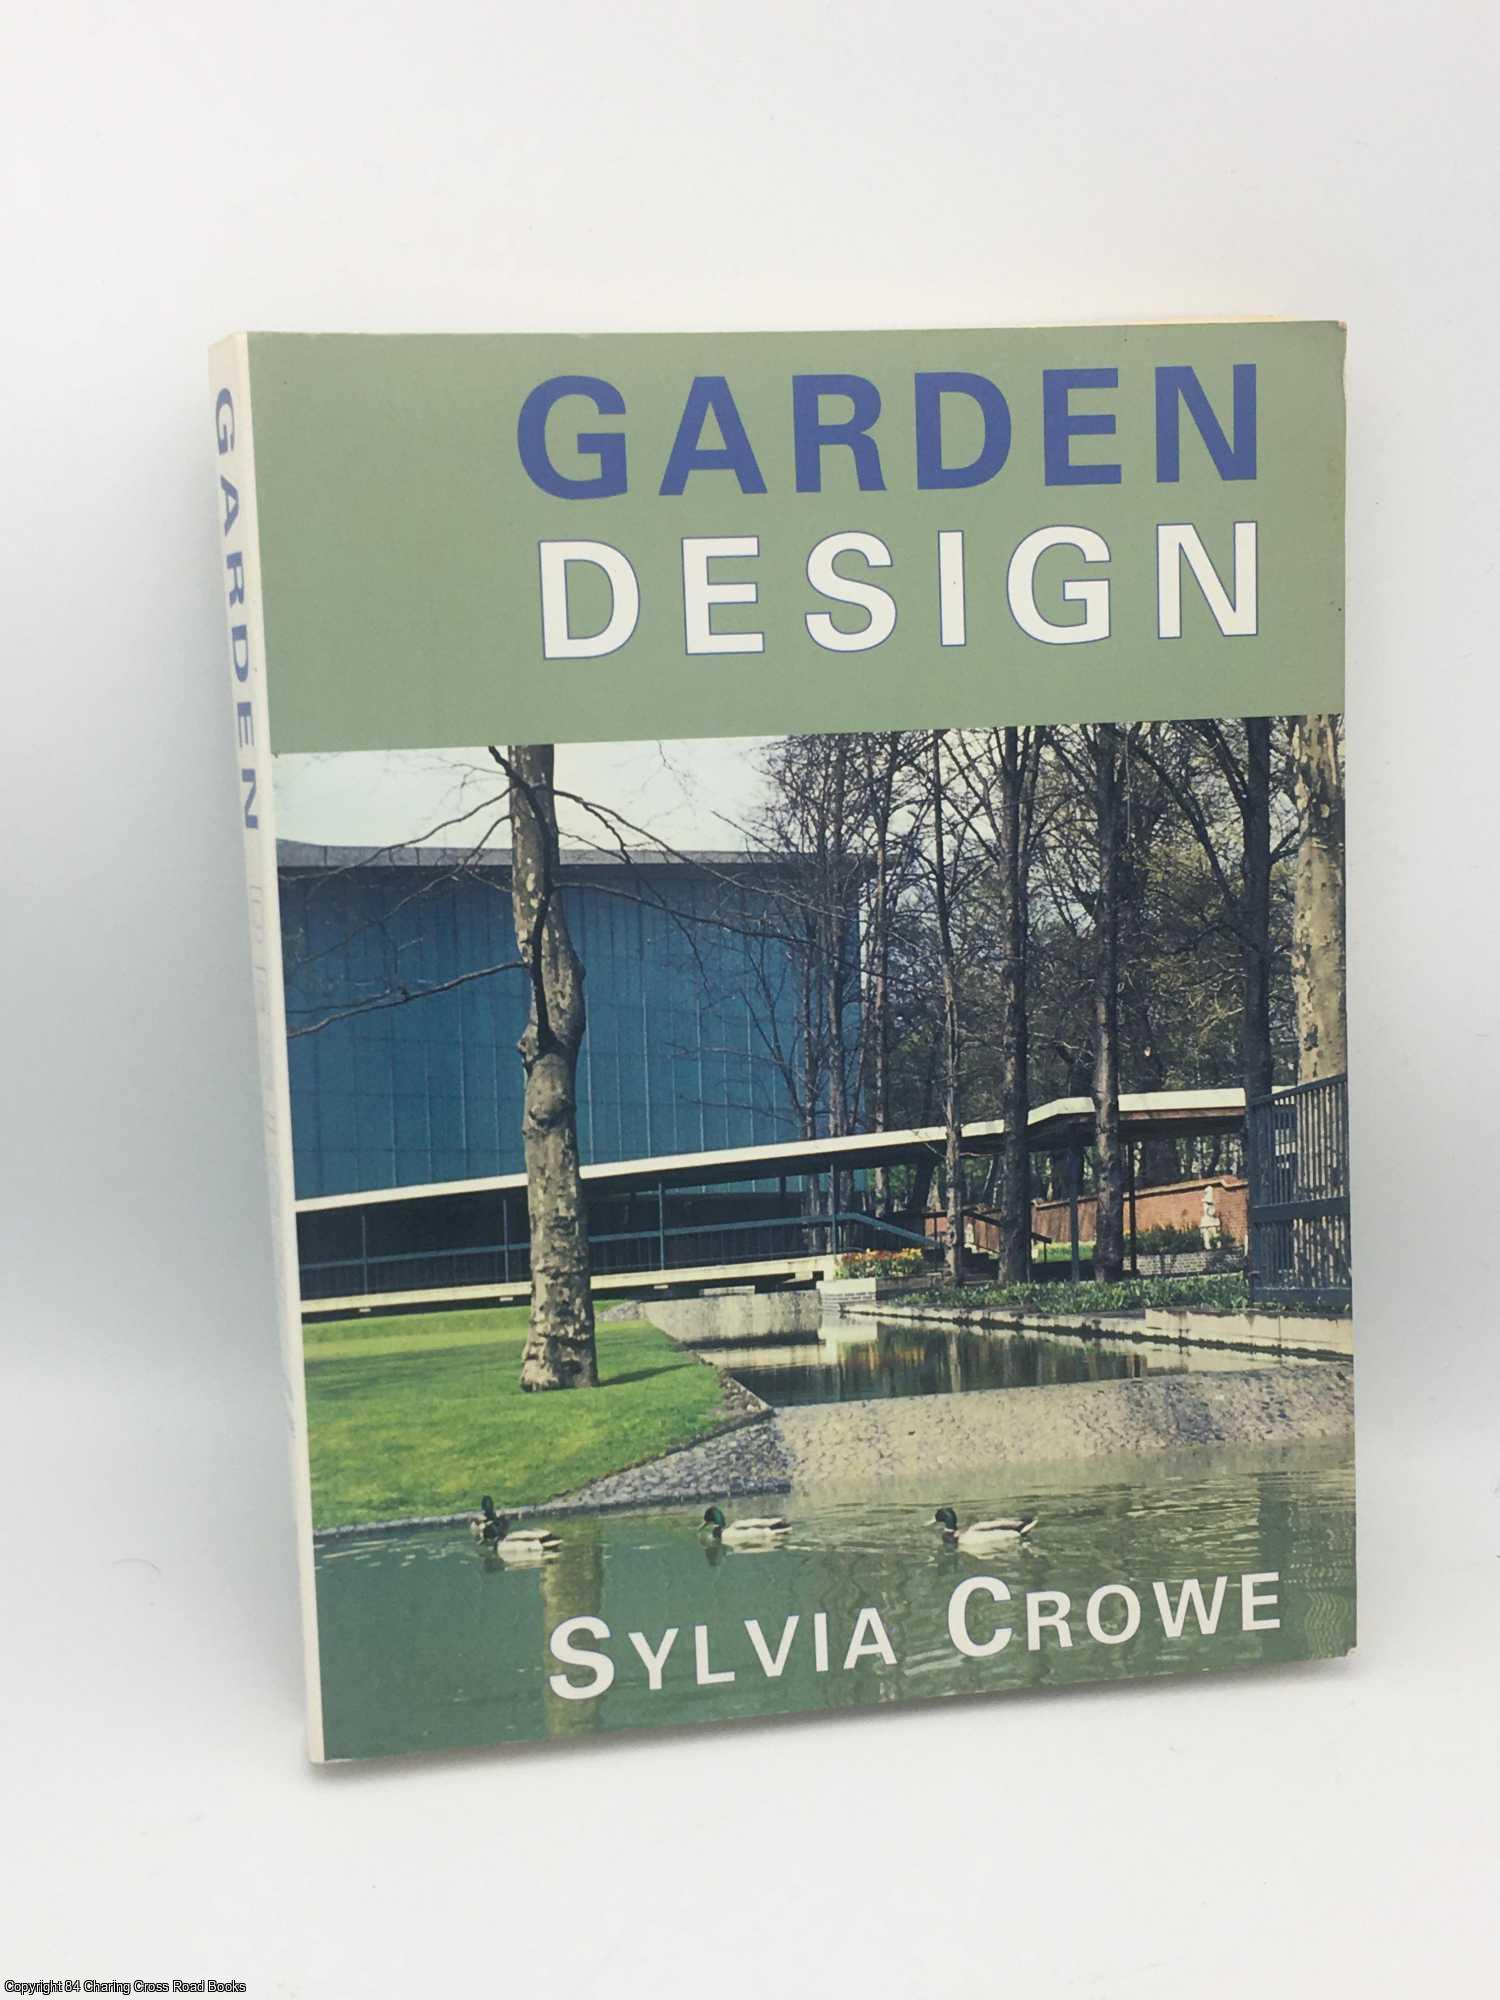 Crowe, Sylvia - Garden Design - Sylvia Crowe